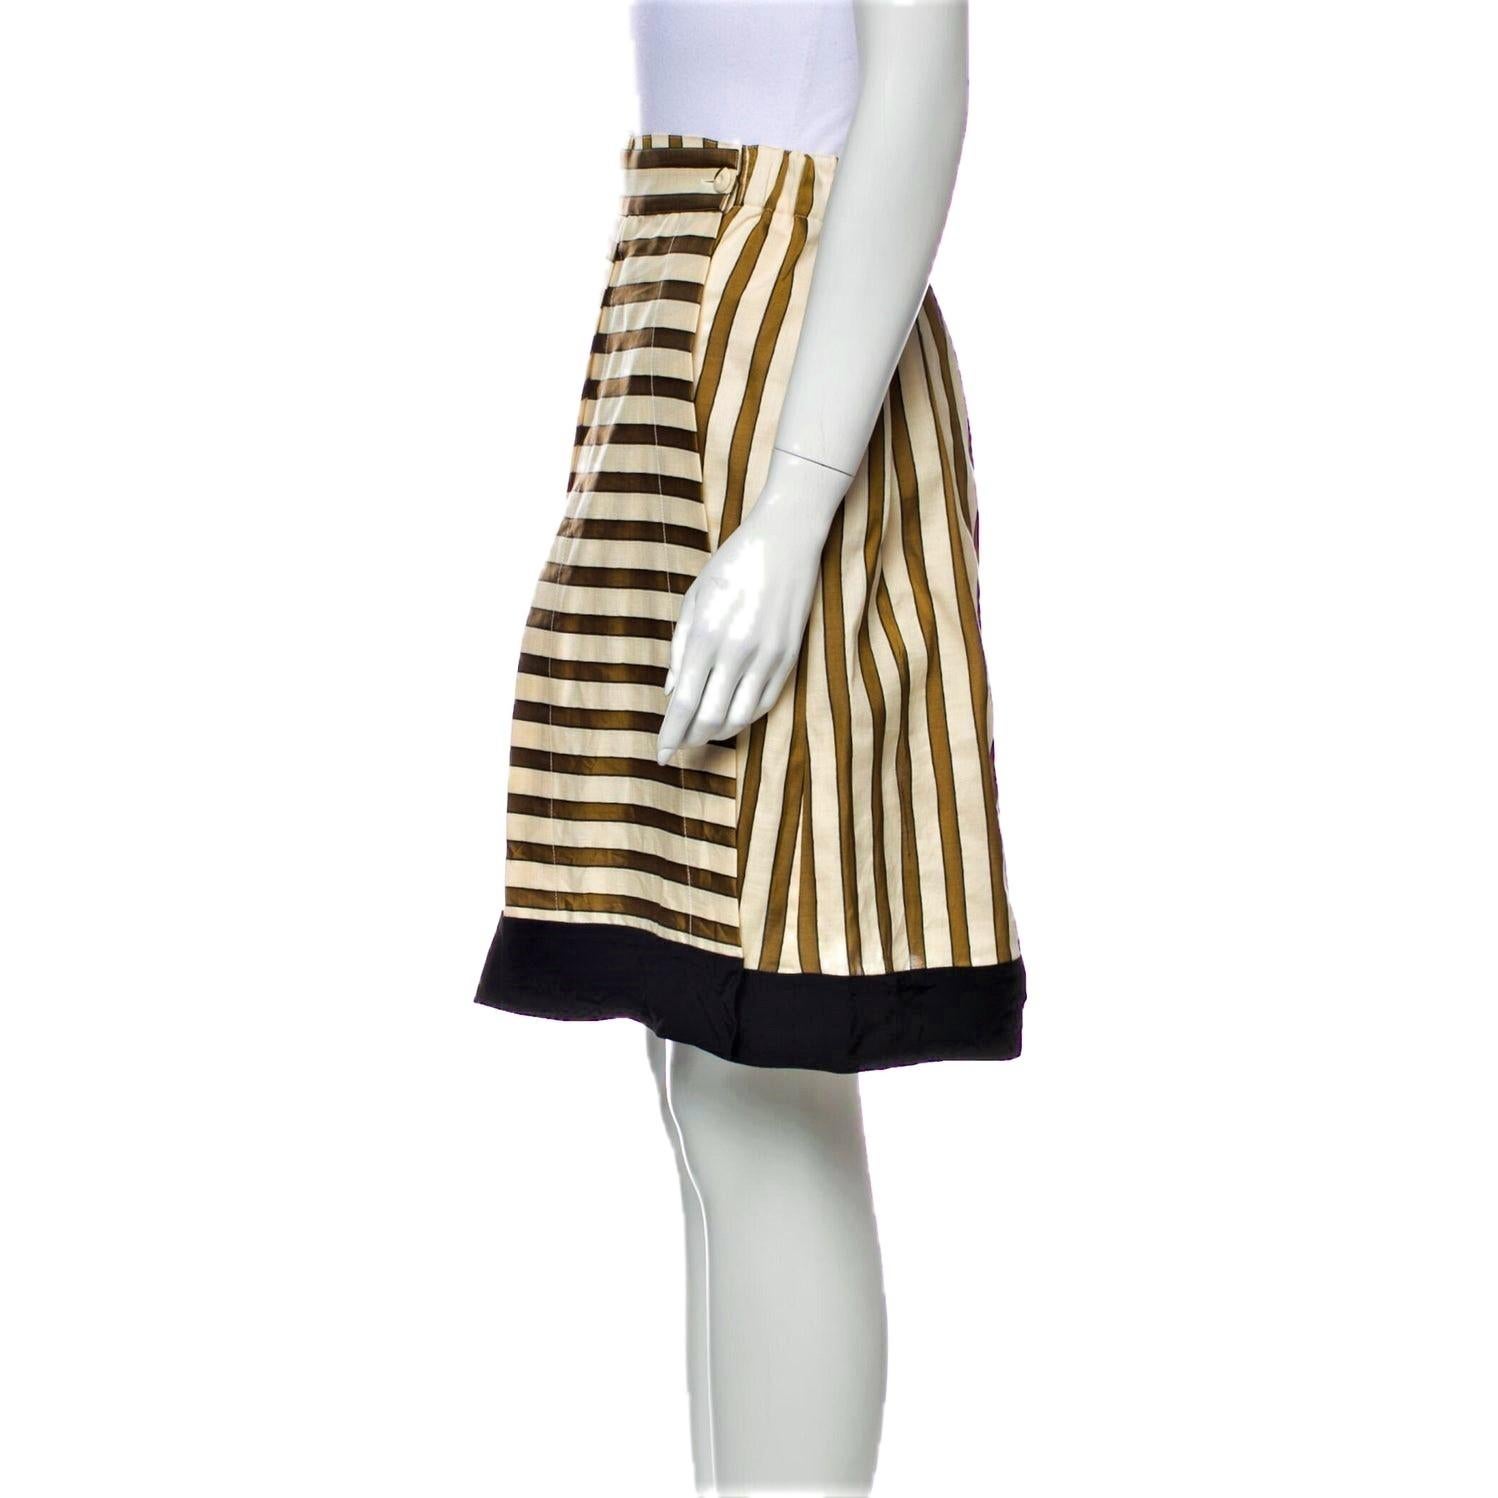 Women's New Rare Fendi Karl Lagerfeld Runway Skirt S/S 2012  $1210